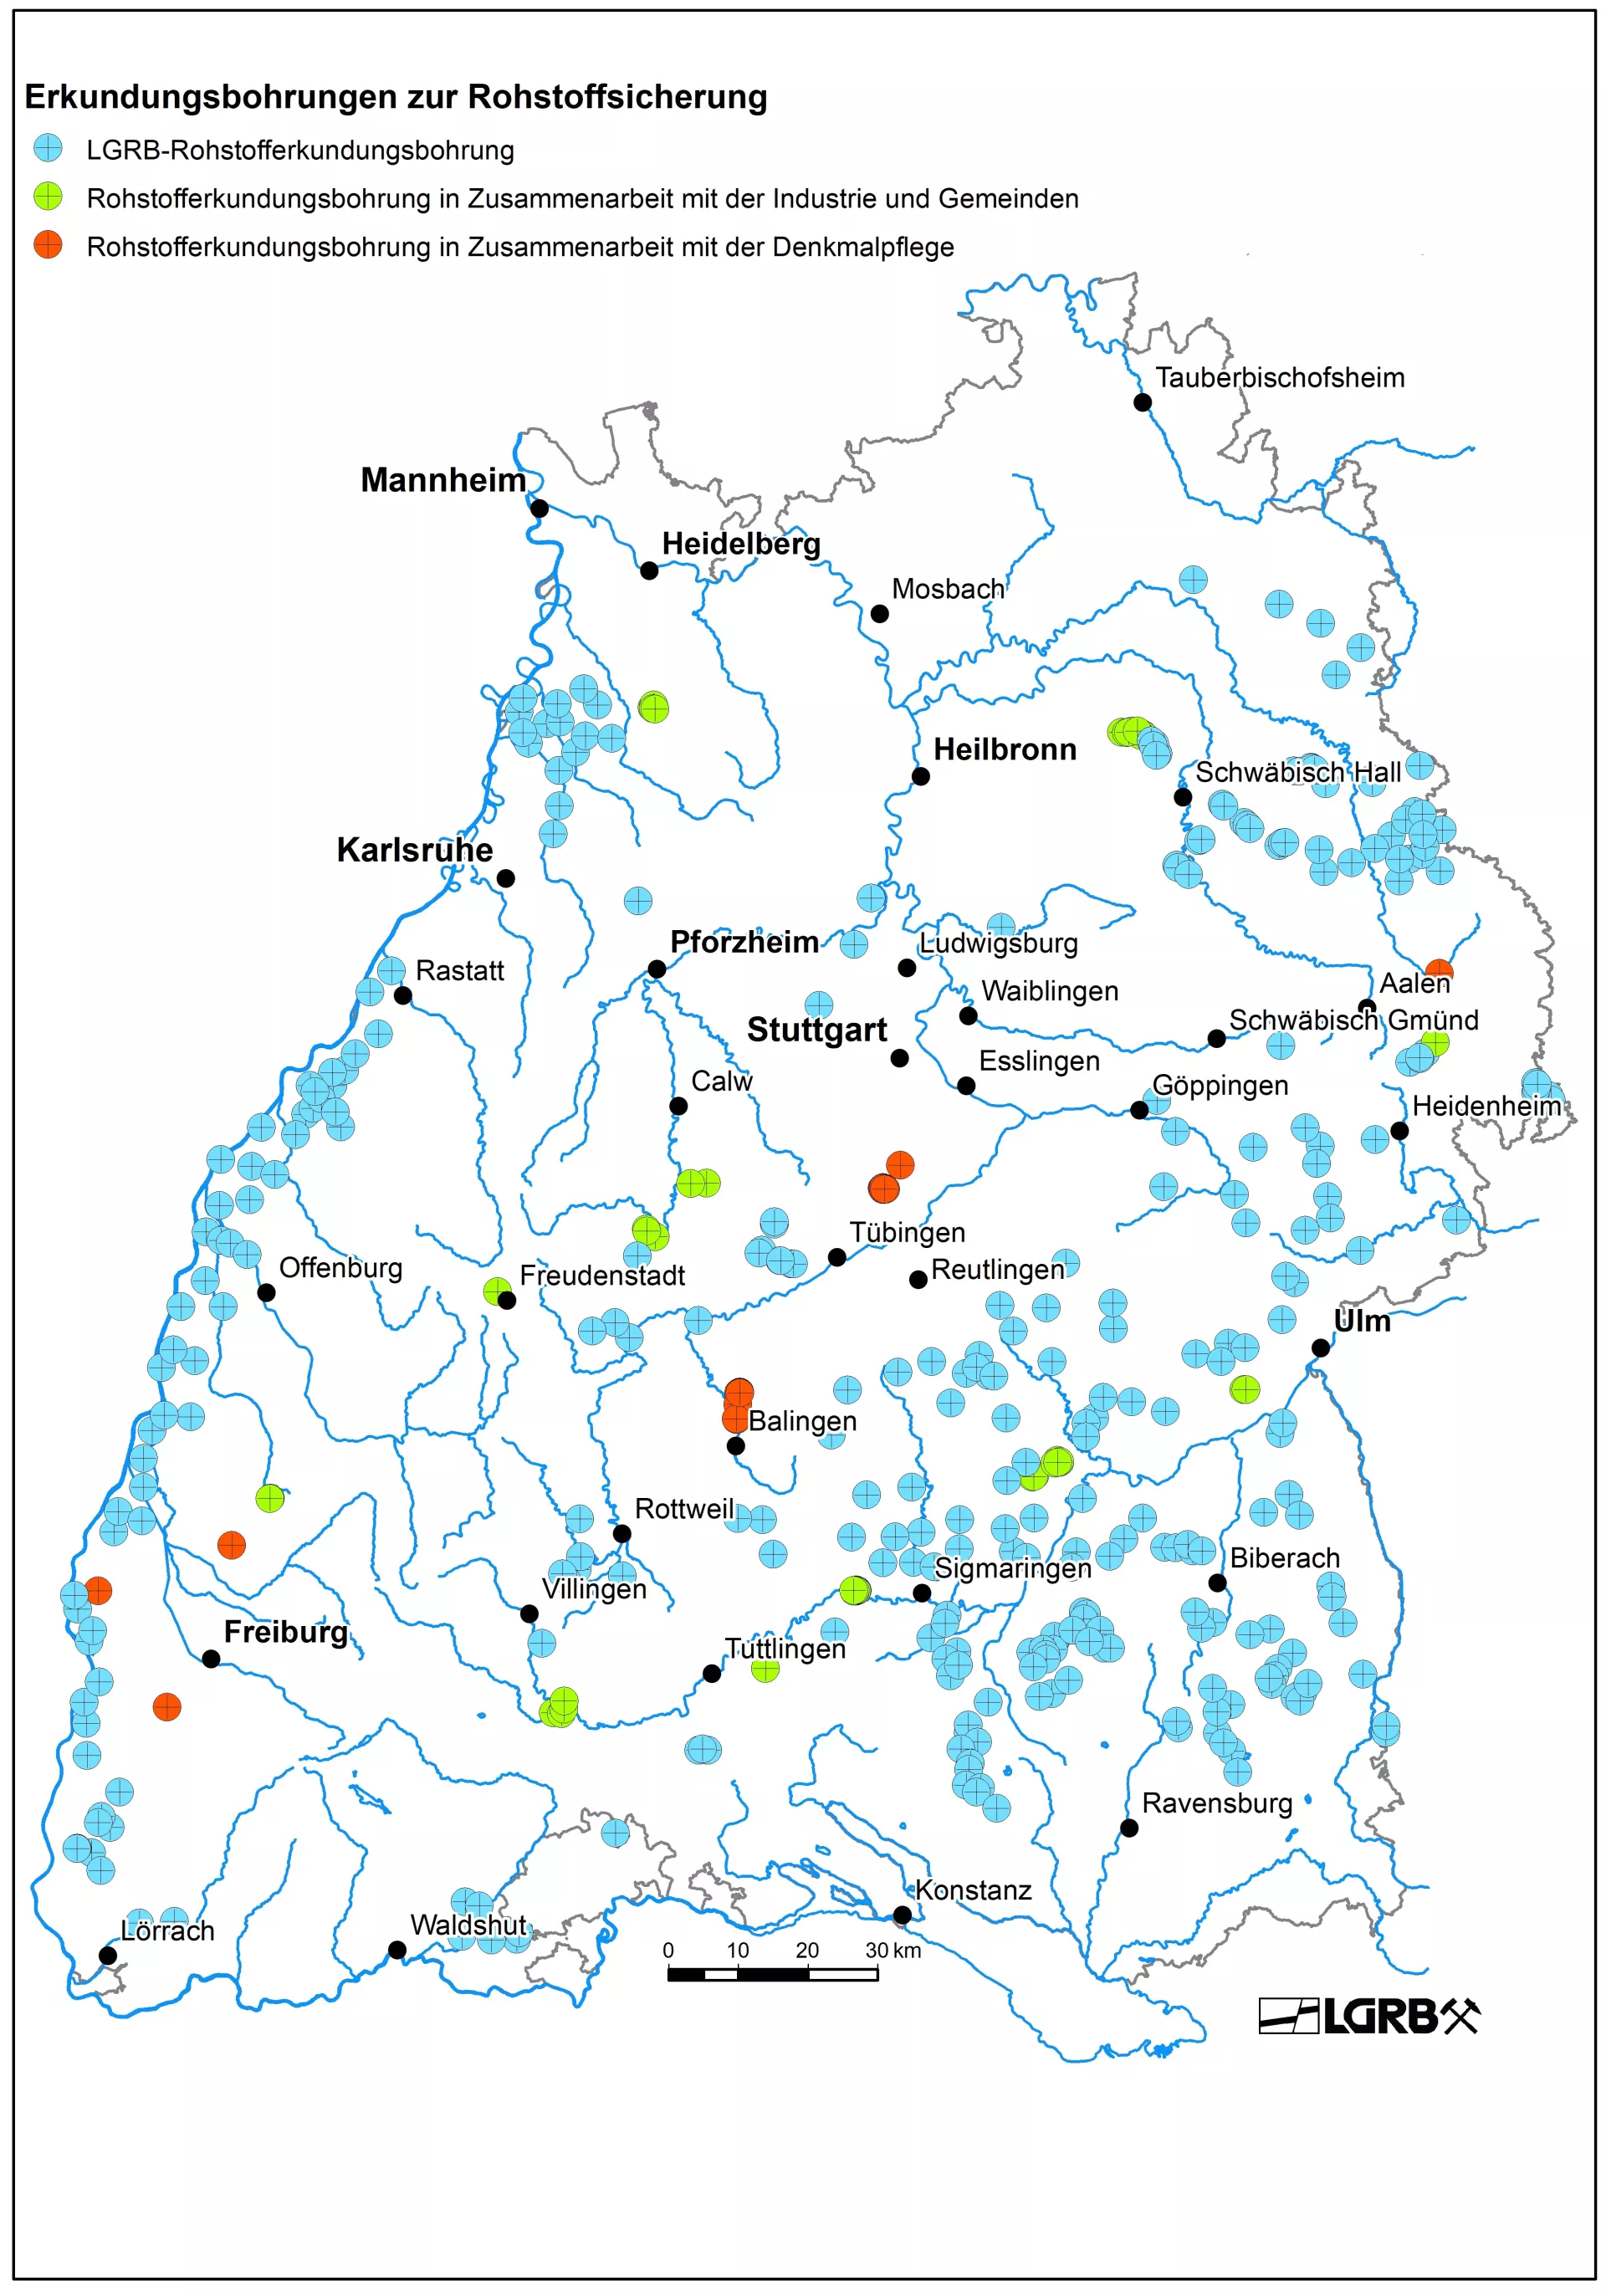 Karte von Baden-Württemberg mit Punkten, welche Erkundungsbohrungen des LGRB und in Zusammenarbeit mit der Industrie, Gemeinden und der Denkmalpflege repräsentieren.